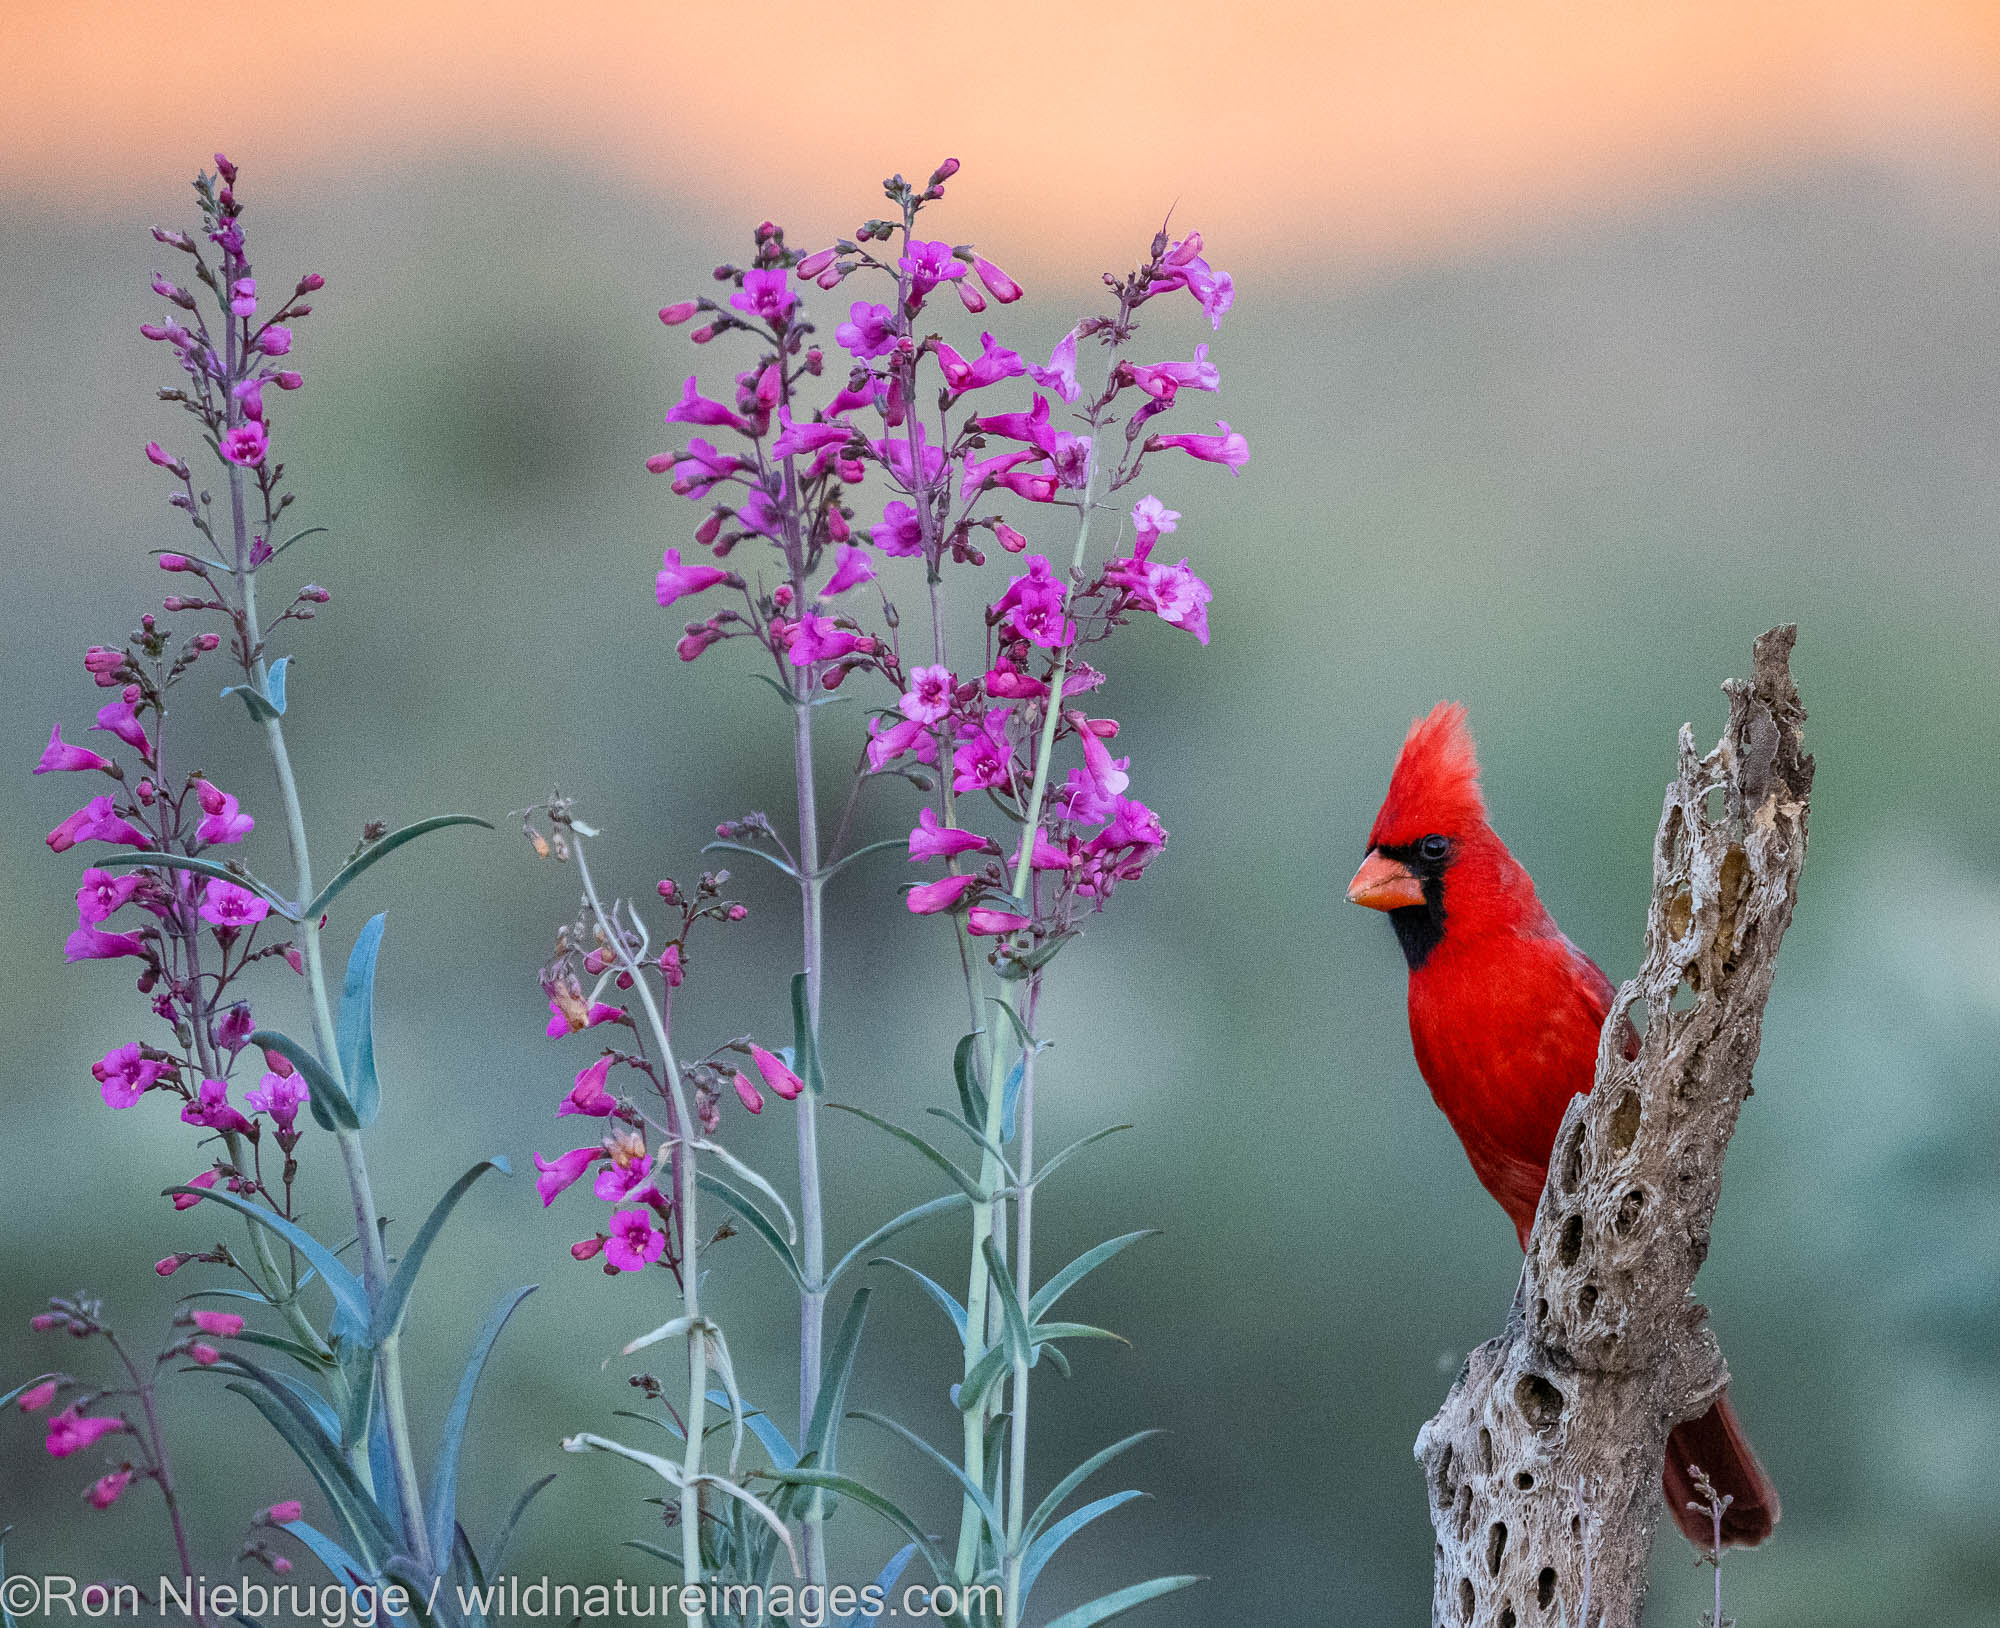 Northern Cardinal, Marana, near Tucson, Arizona.